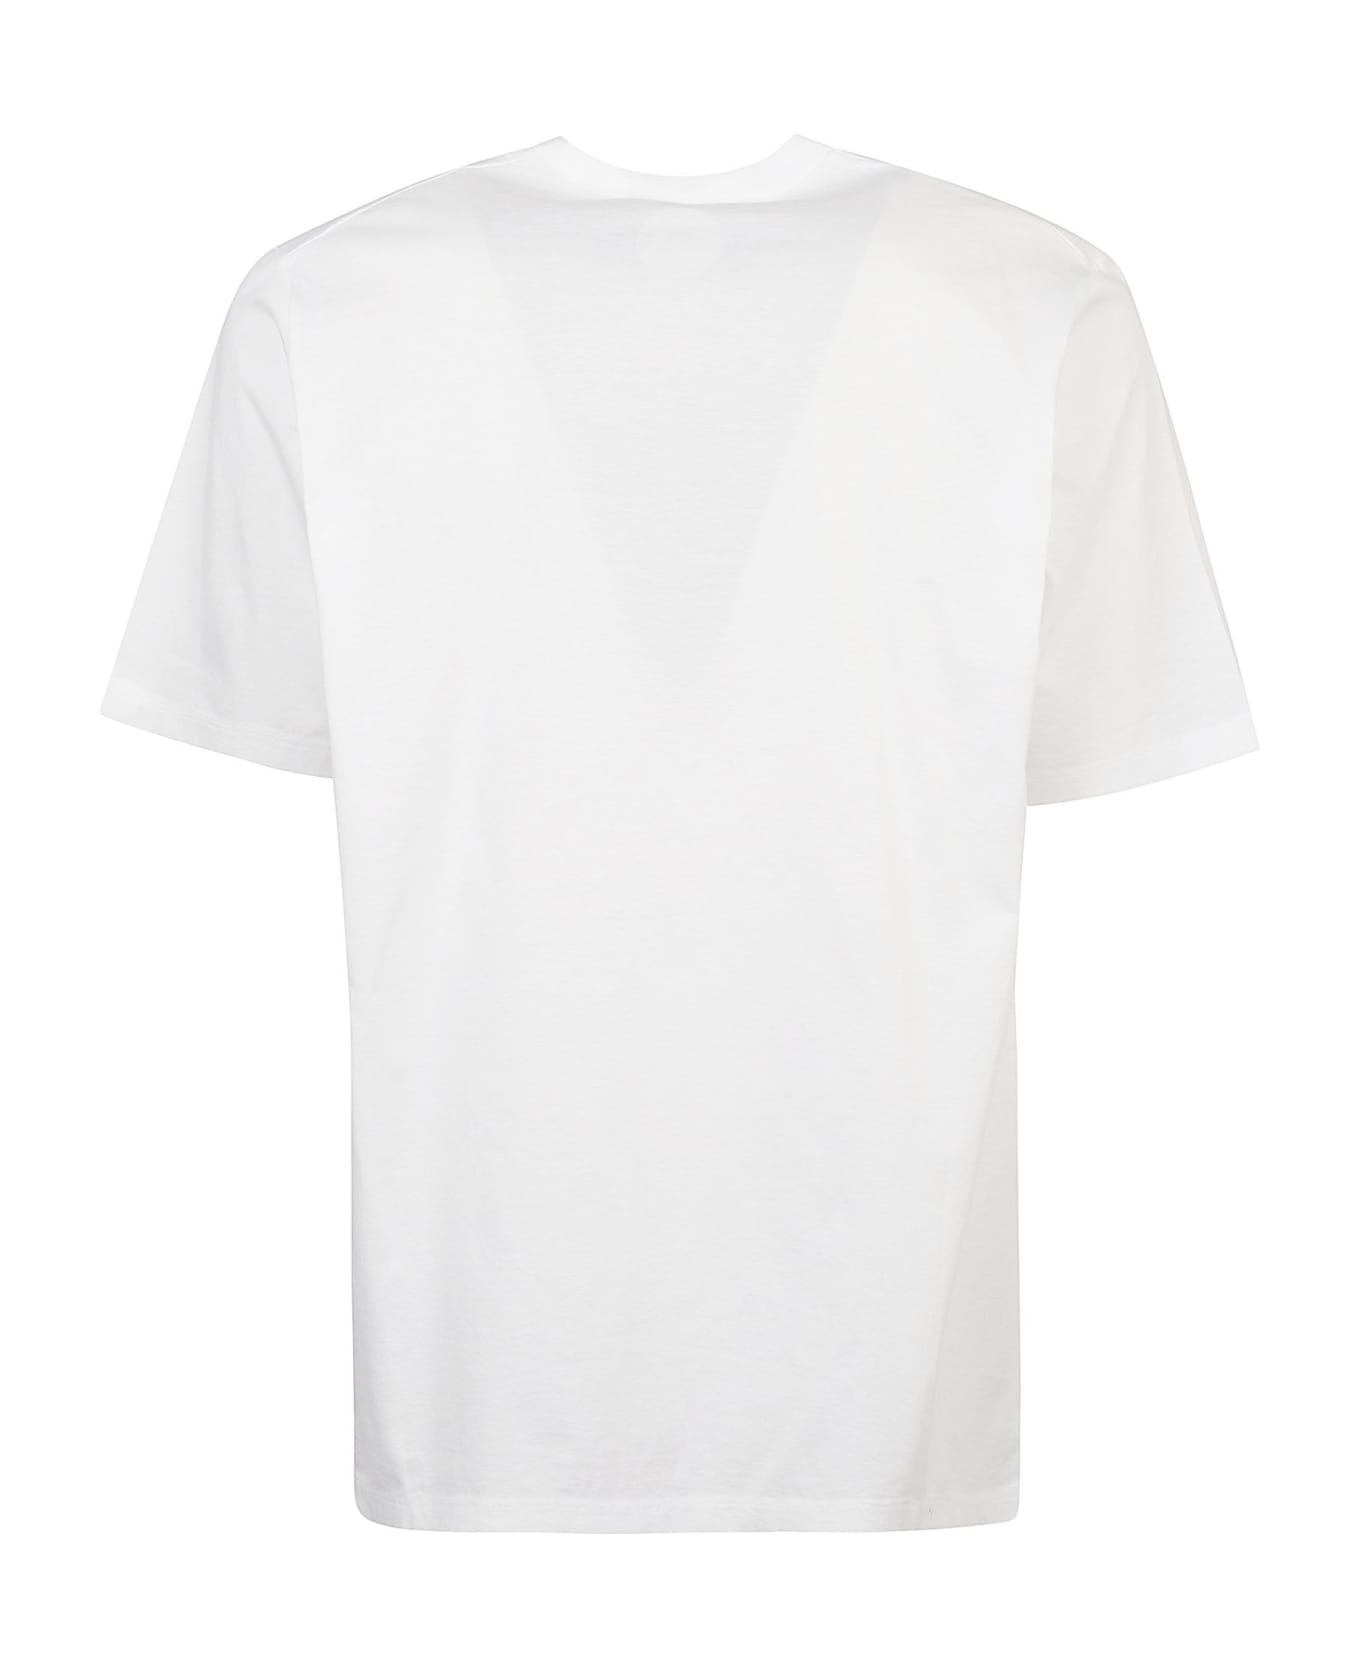 Dsquared2 Caten's Beach T-shirt - White